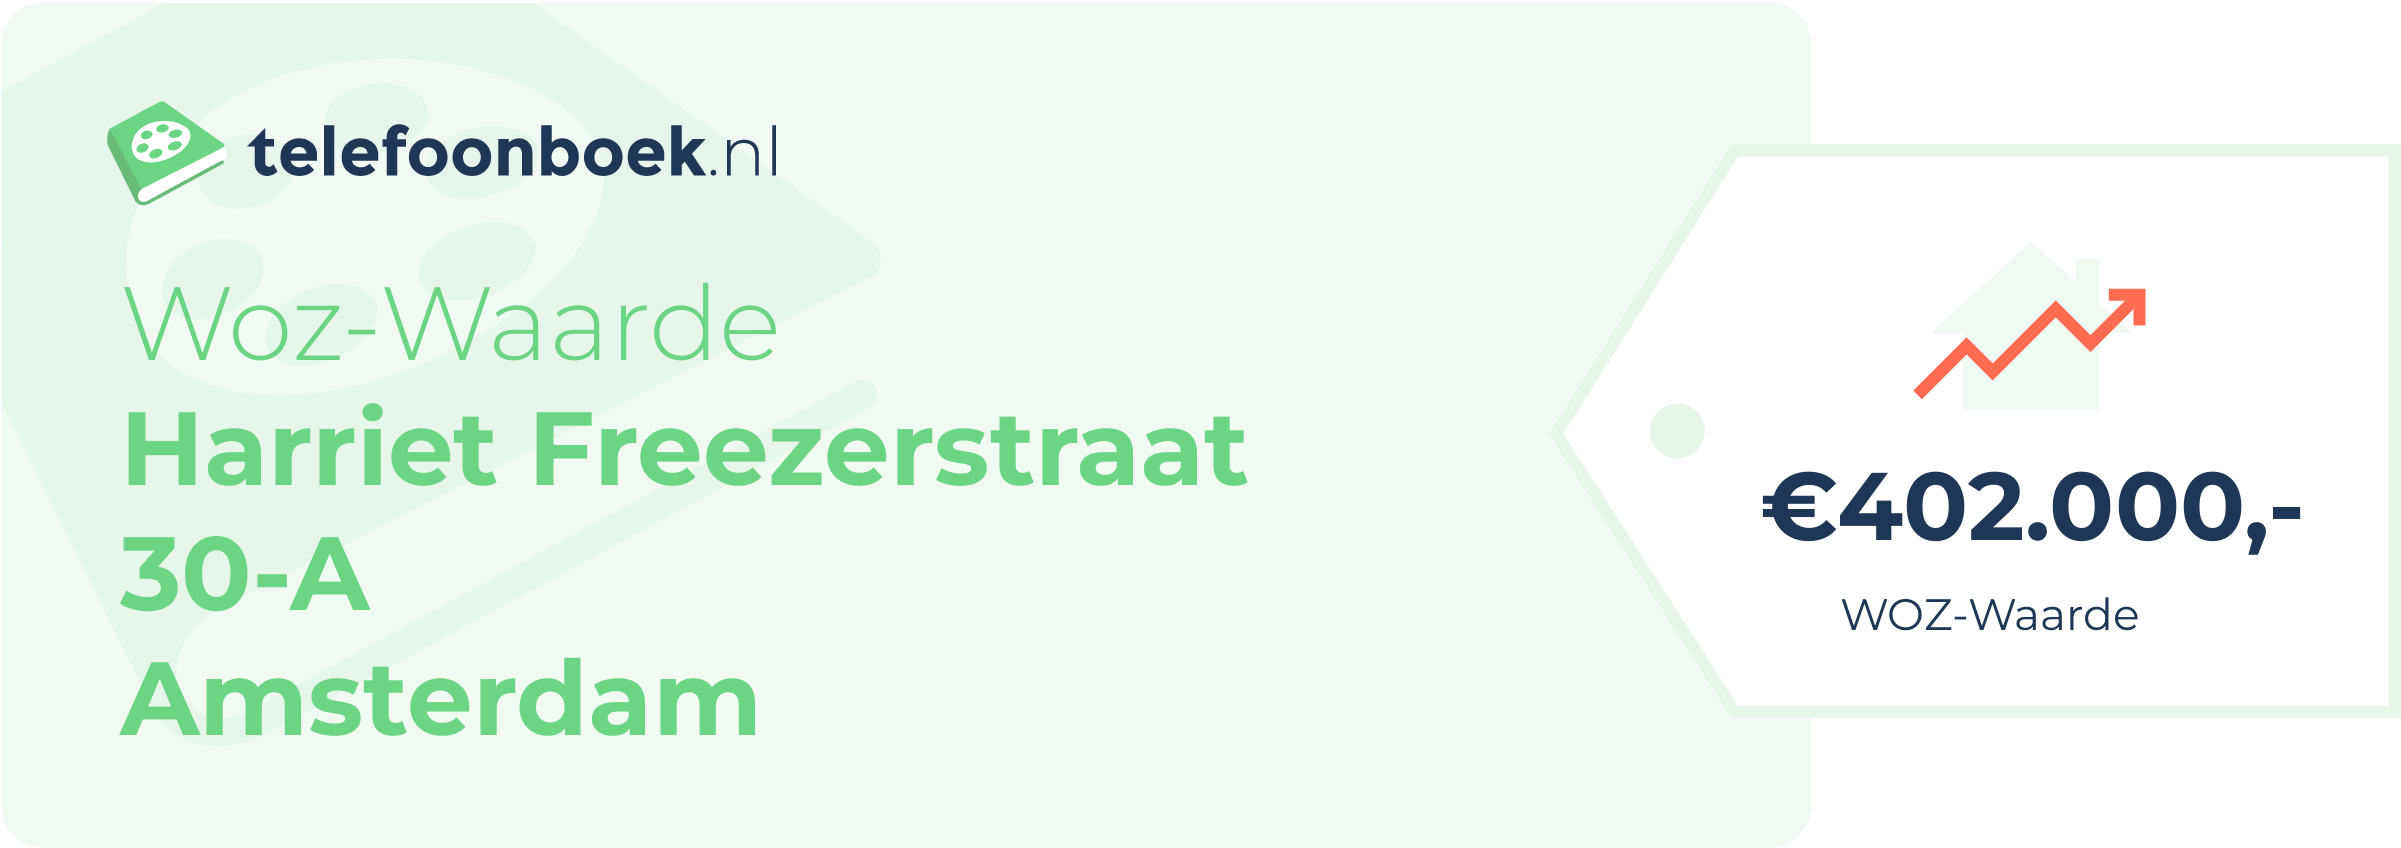 WOZ-waarde Harriet Freezerstraat 30-A Amsterdam